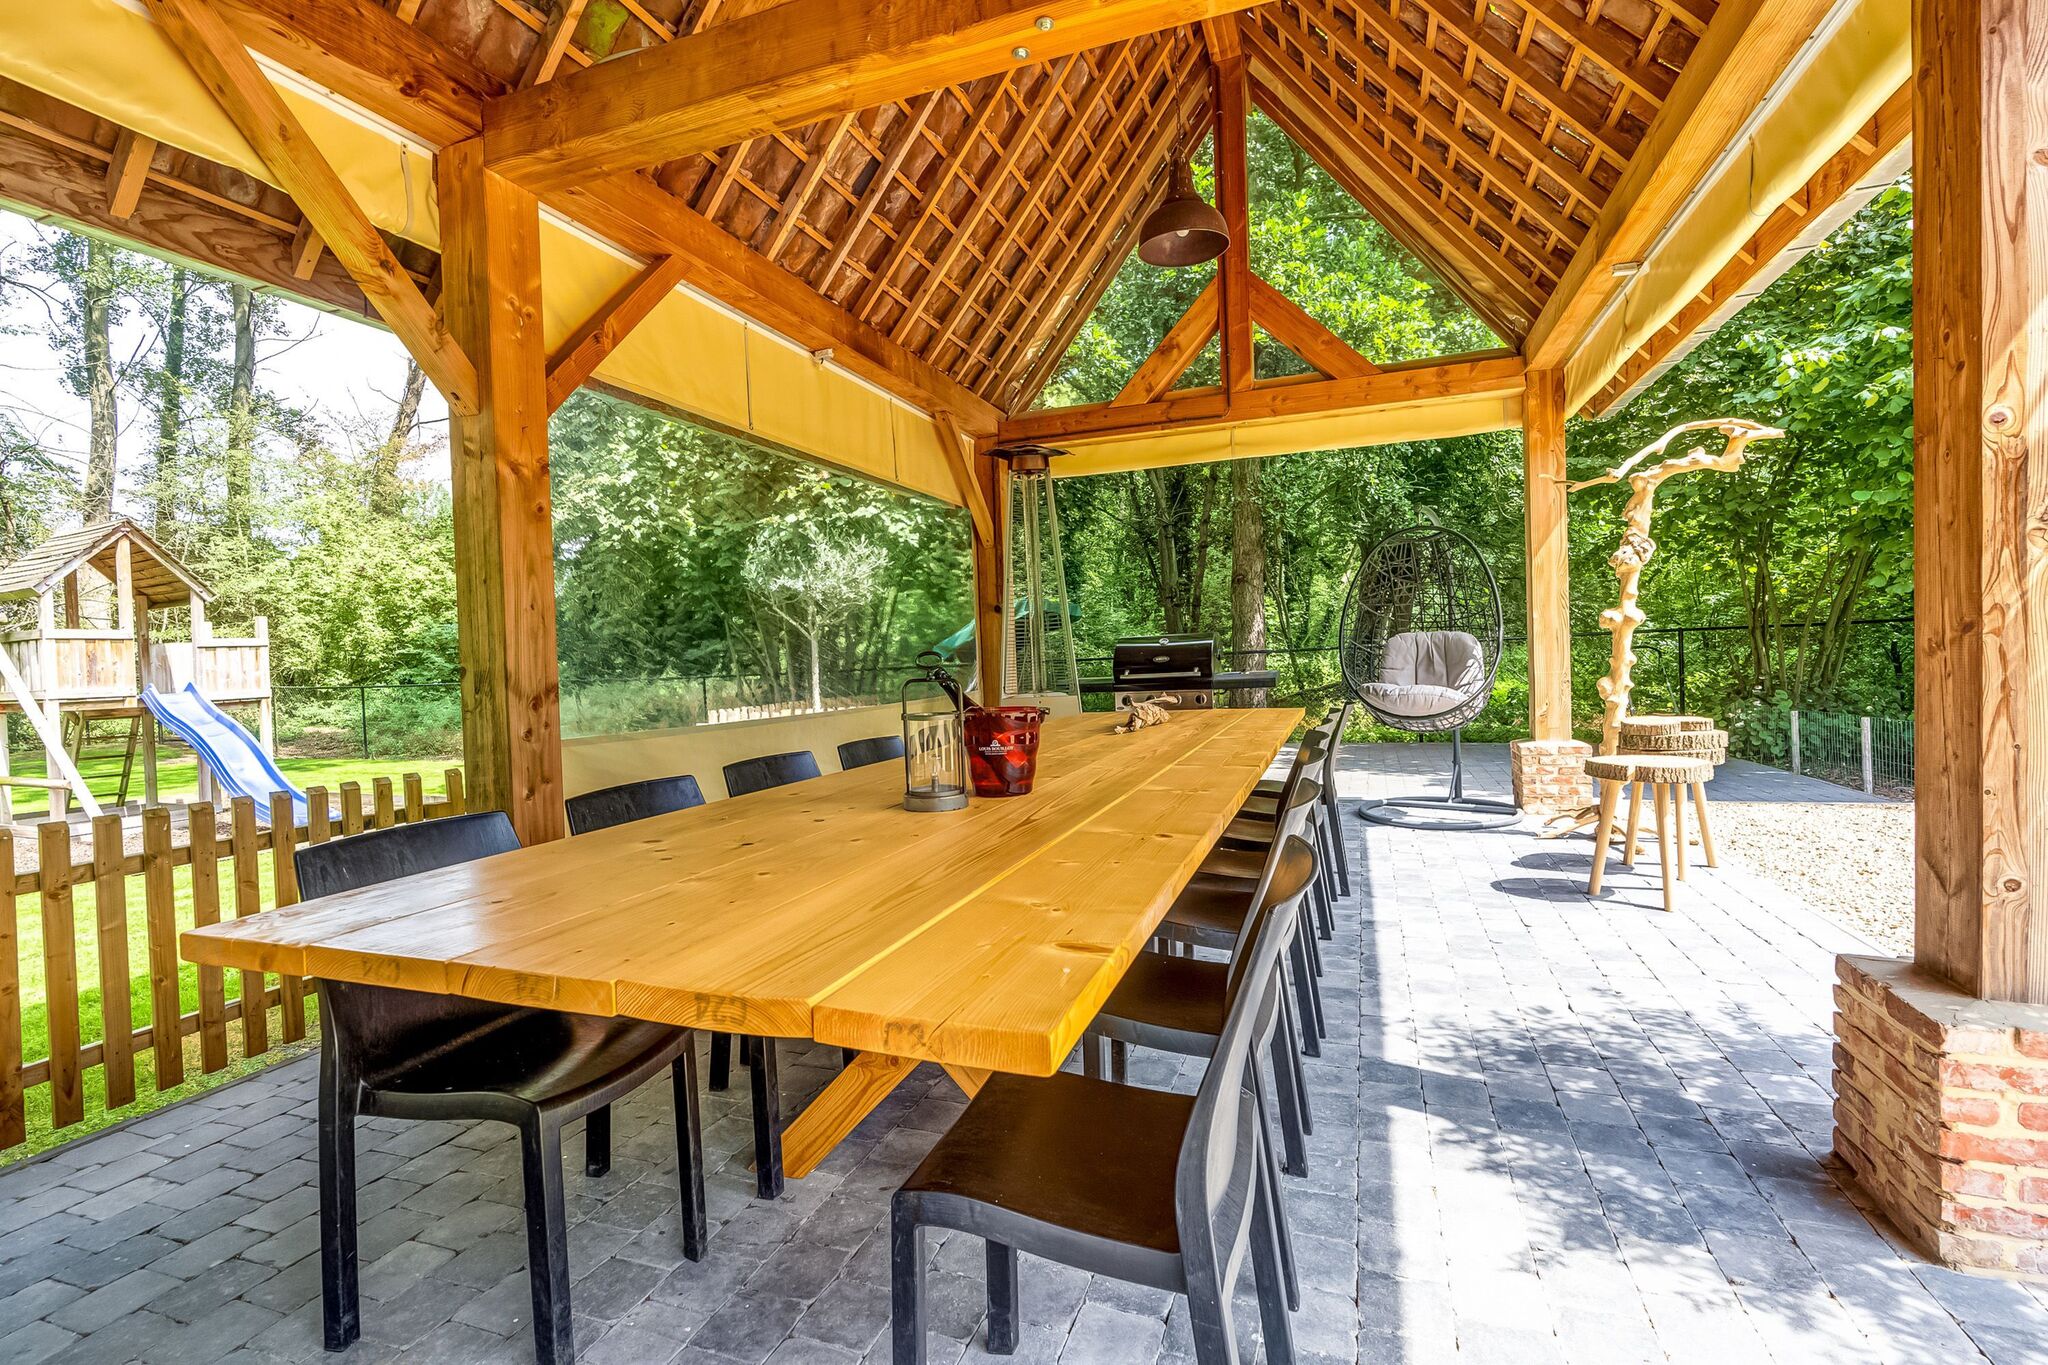 Maison de vacances spacieuse à Hoeselt avec jardin clos, barbecue et jacuzzi